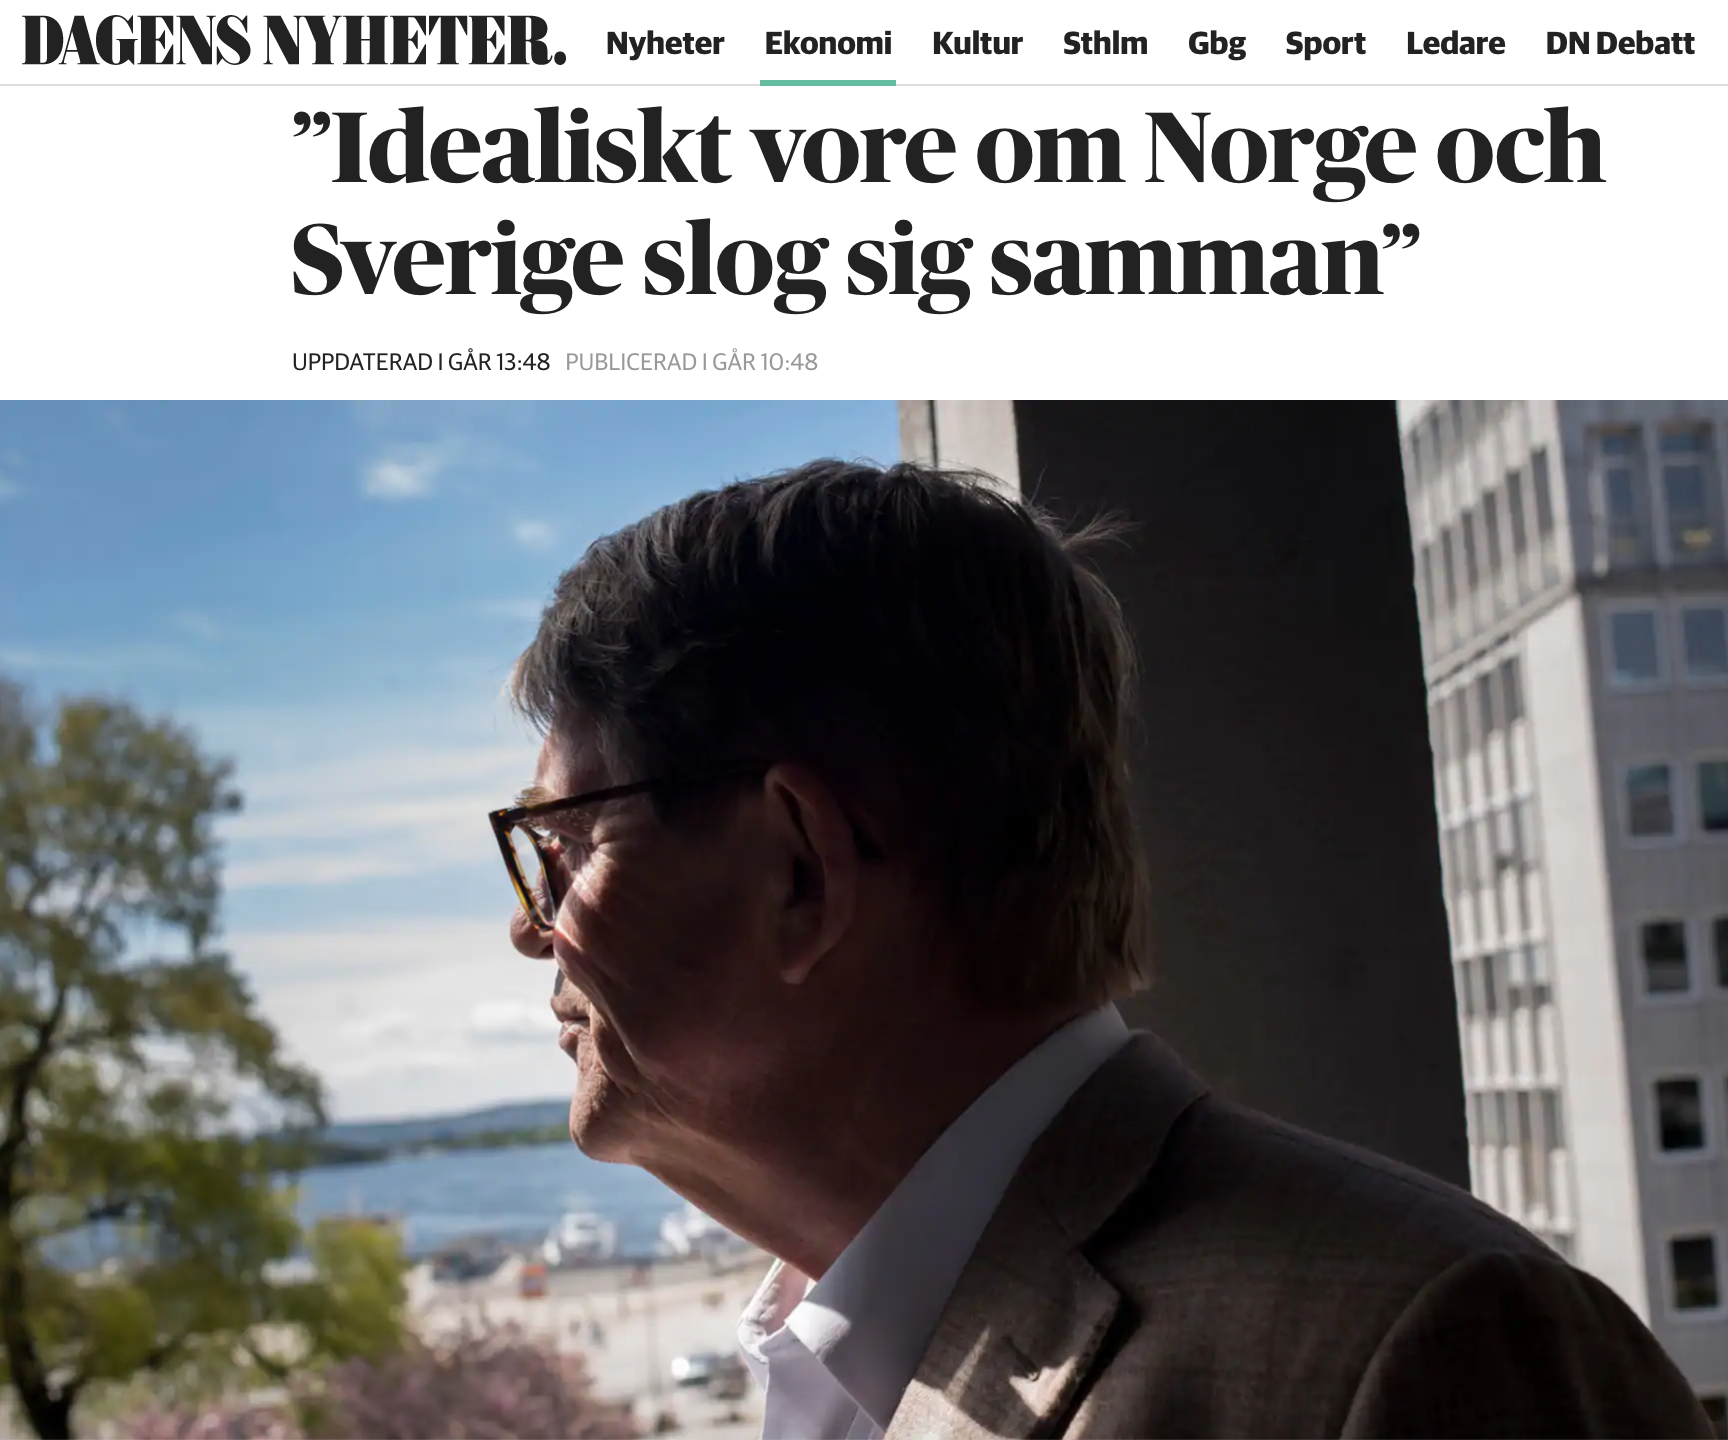 Sverige och Norge är tyvärr ingen fabrik. På sikt är våra normer långt viktigare än pengar och industrikunnande.